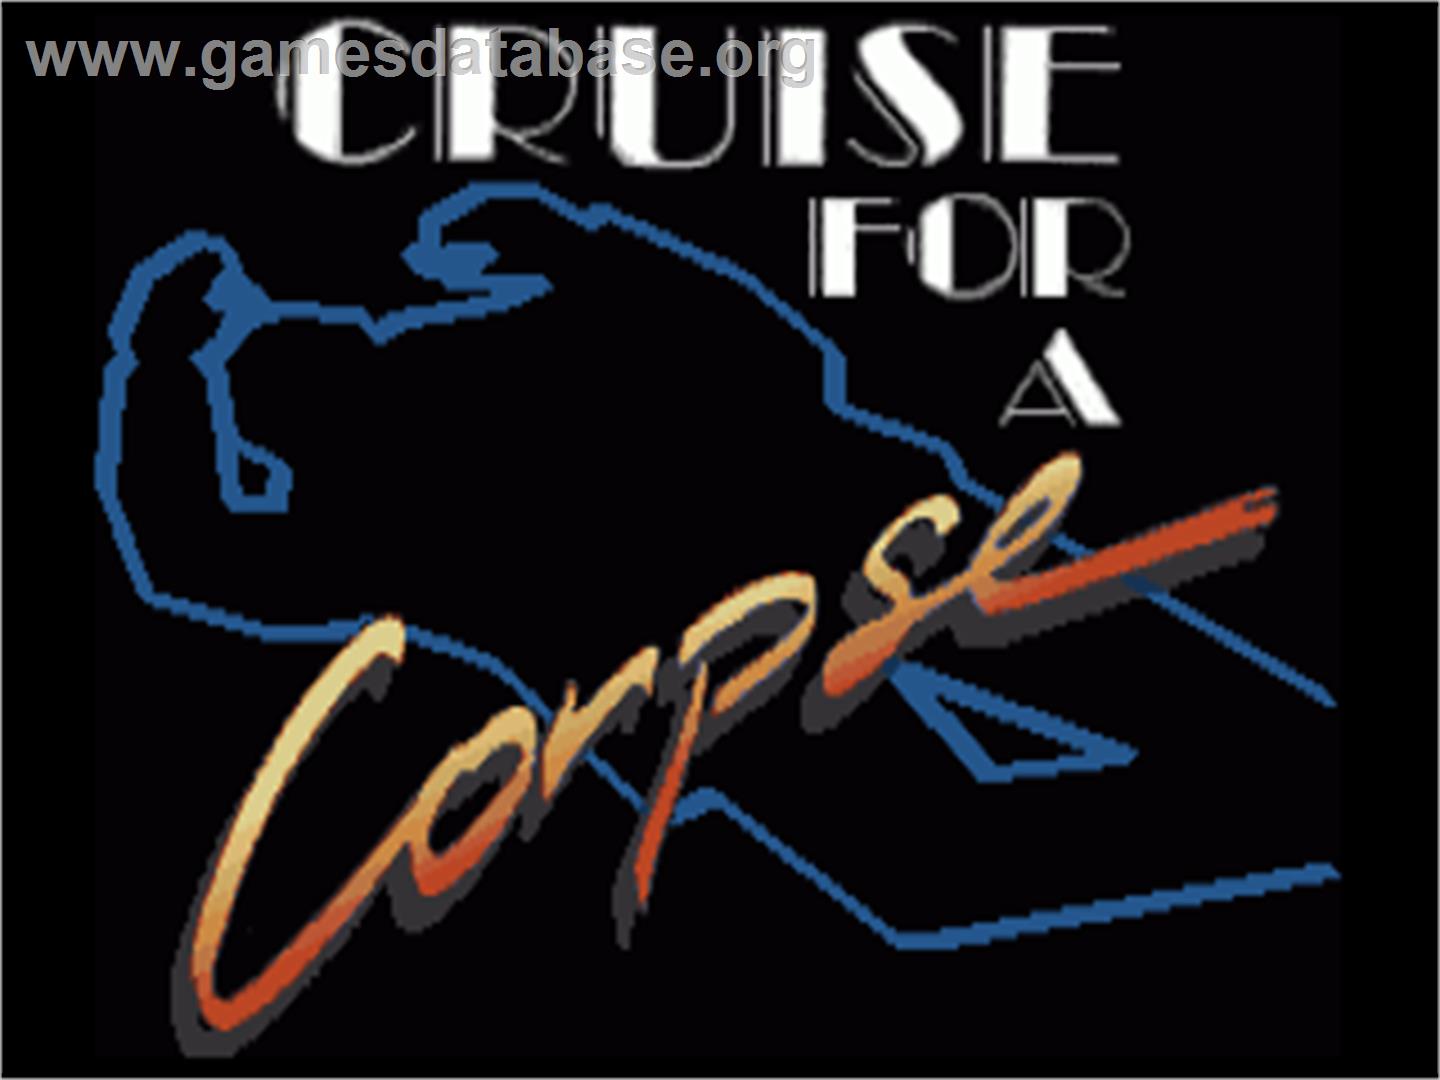 Cruise for a Corpse - Commodore Amiga - Artwork - Title Screen